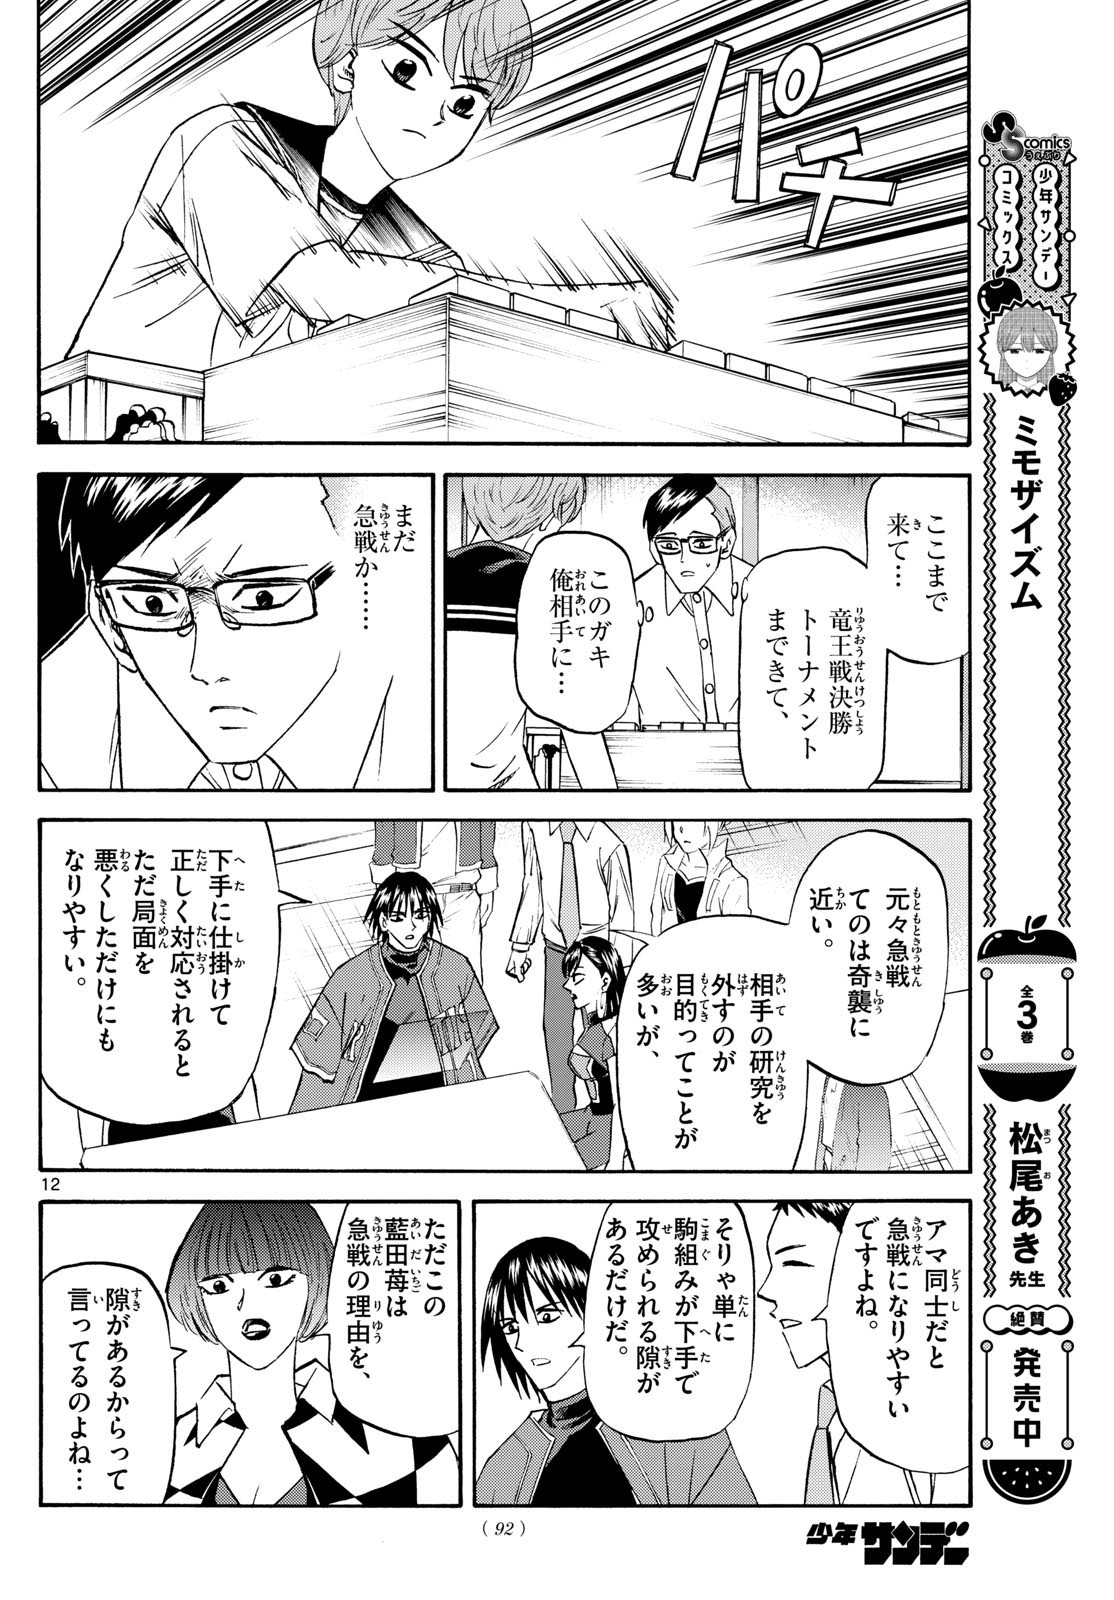 Ryu-to-Ichigo - Chapter 196 - Page 12